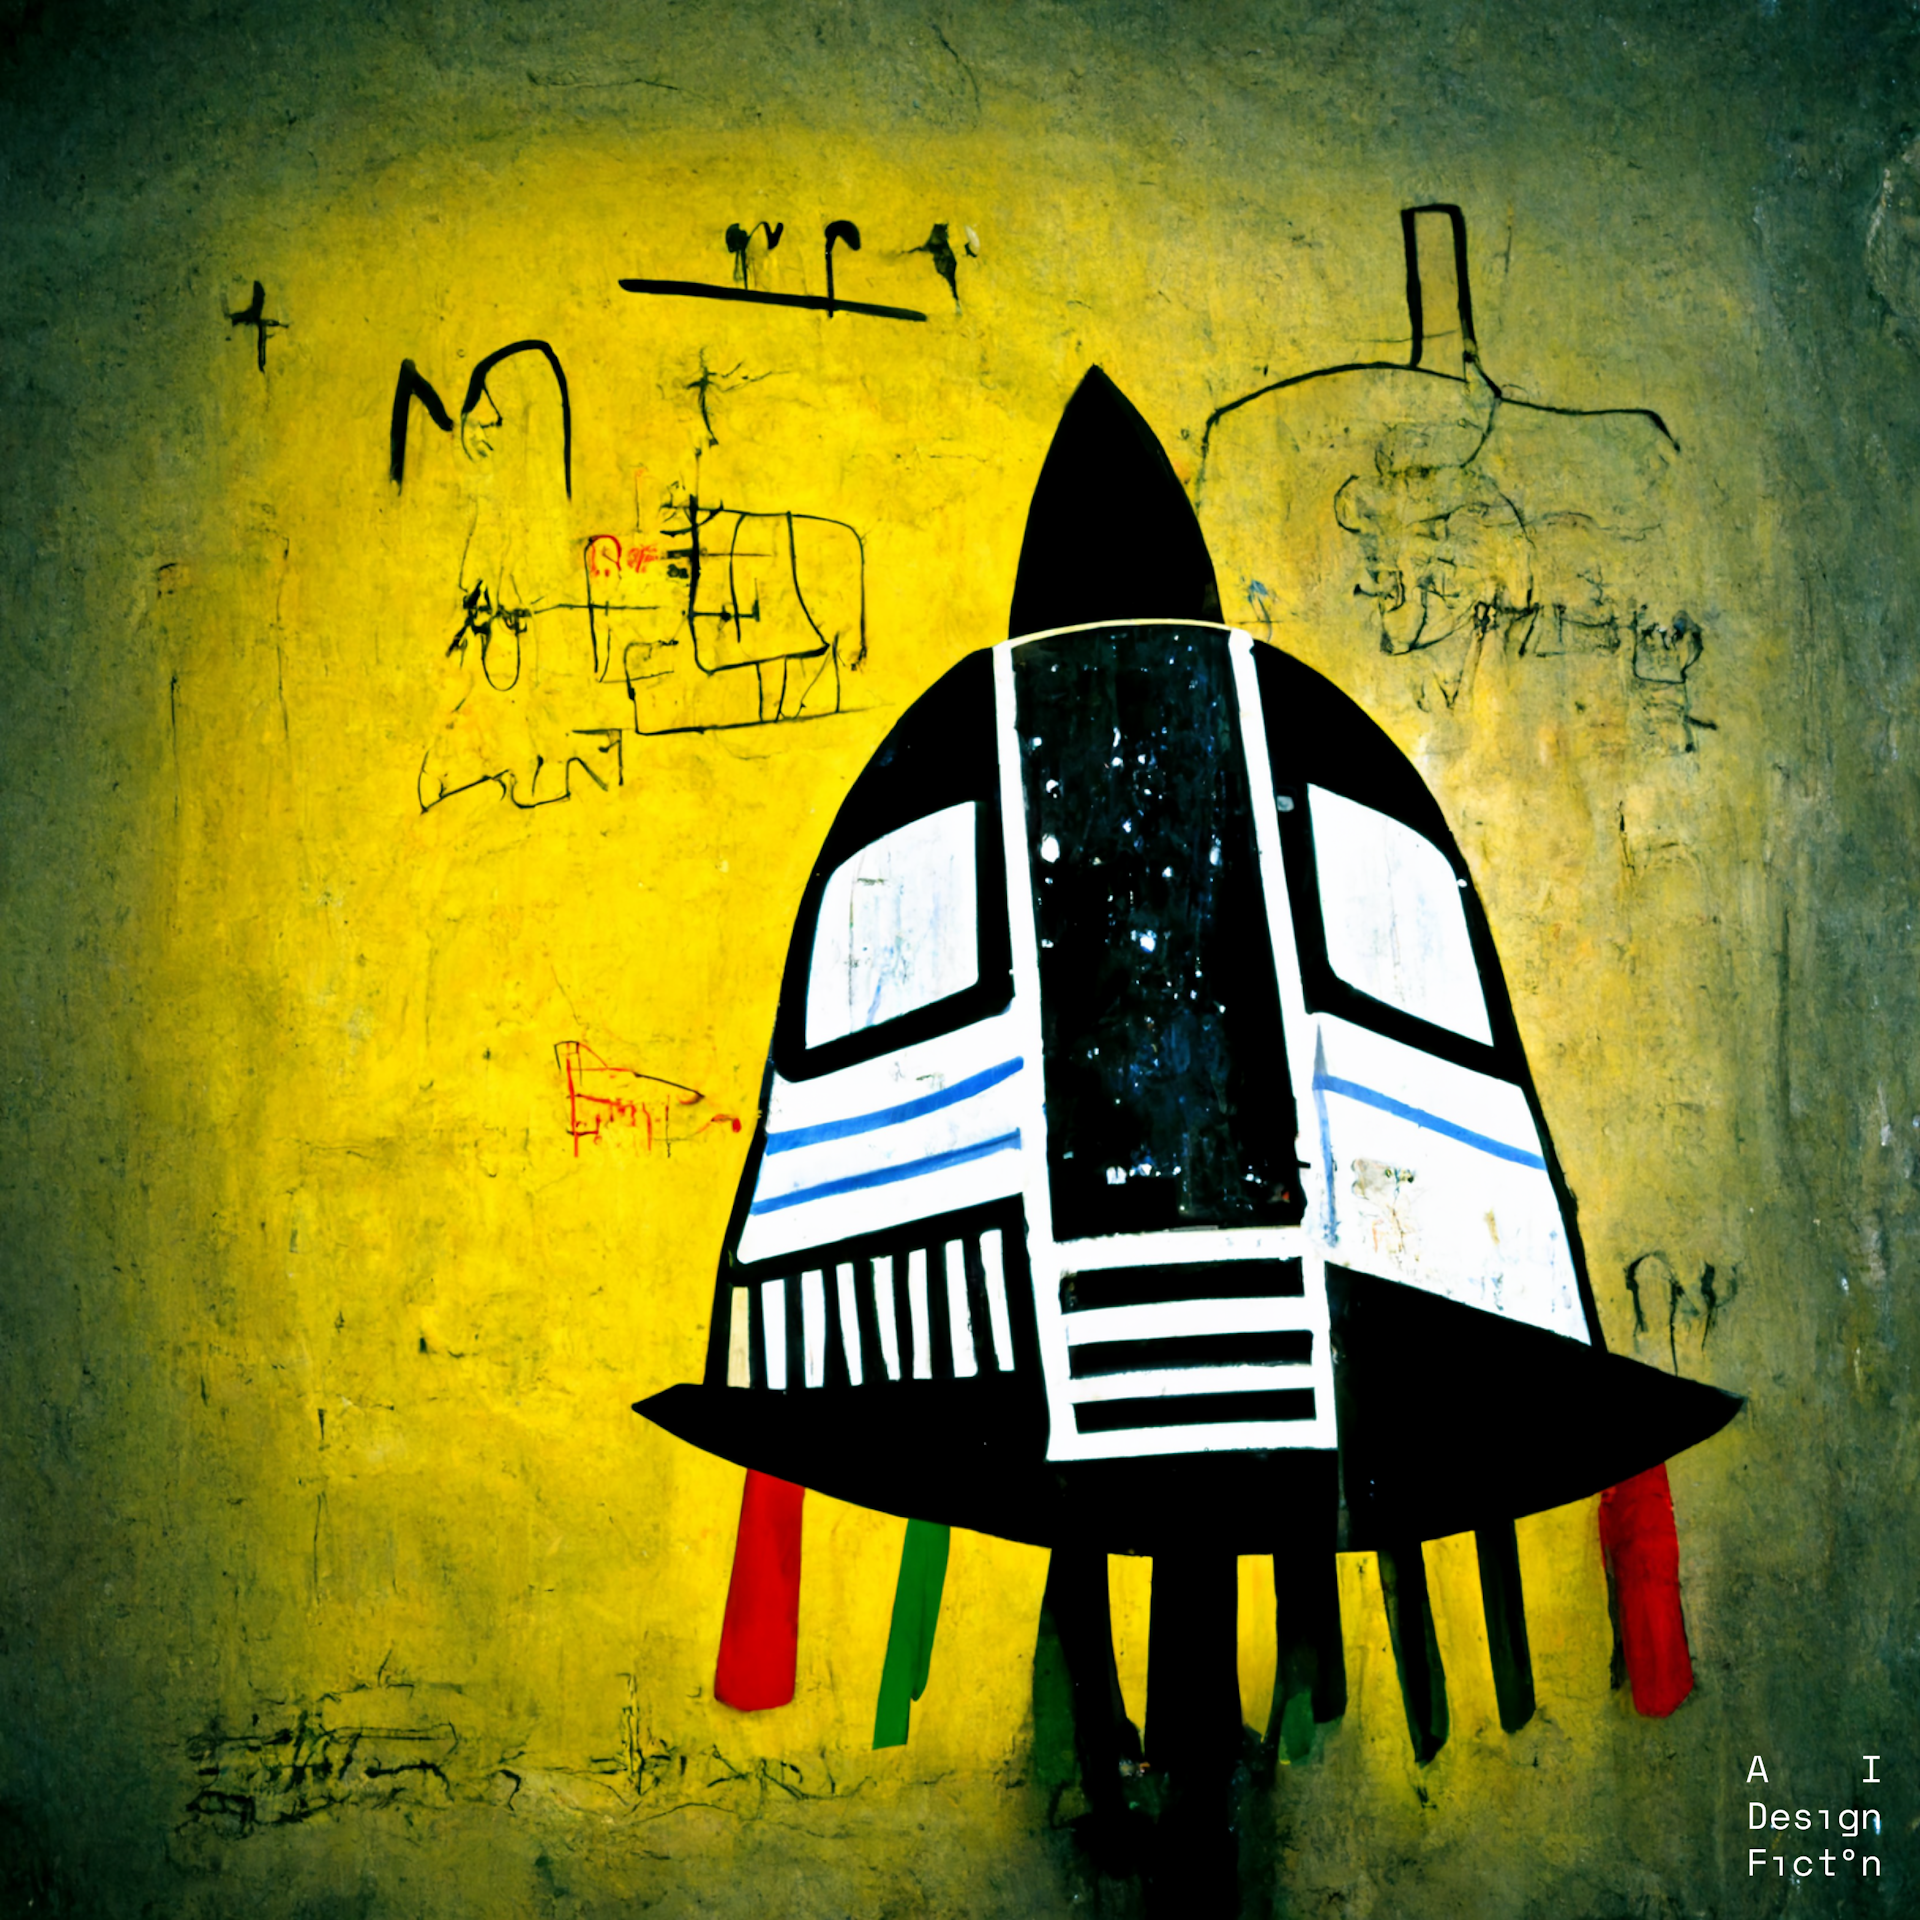 "Spaceship designed by Jean-Michel Basquiat"